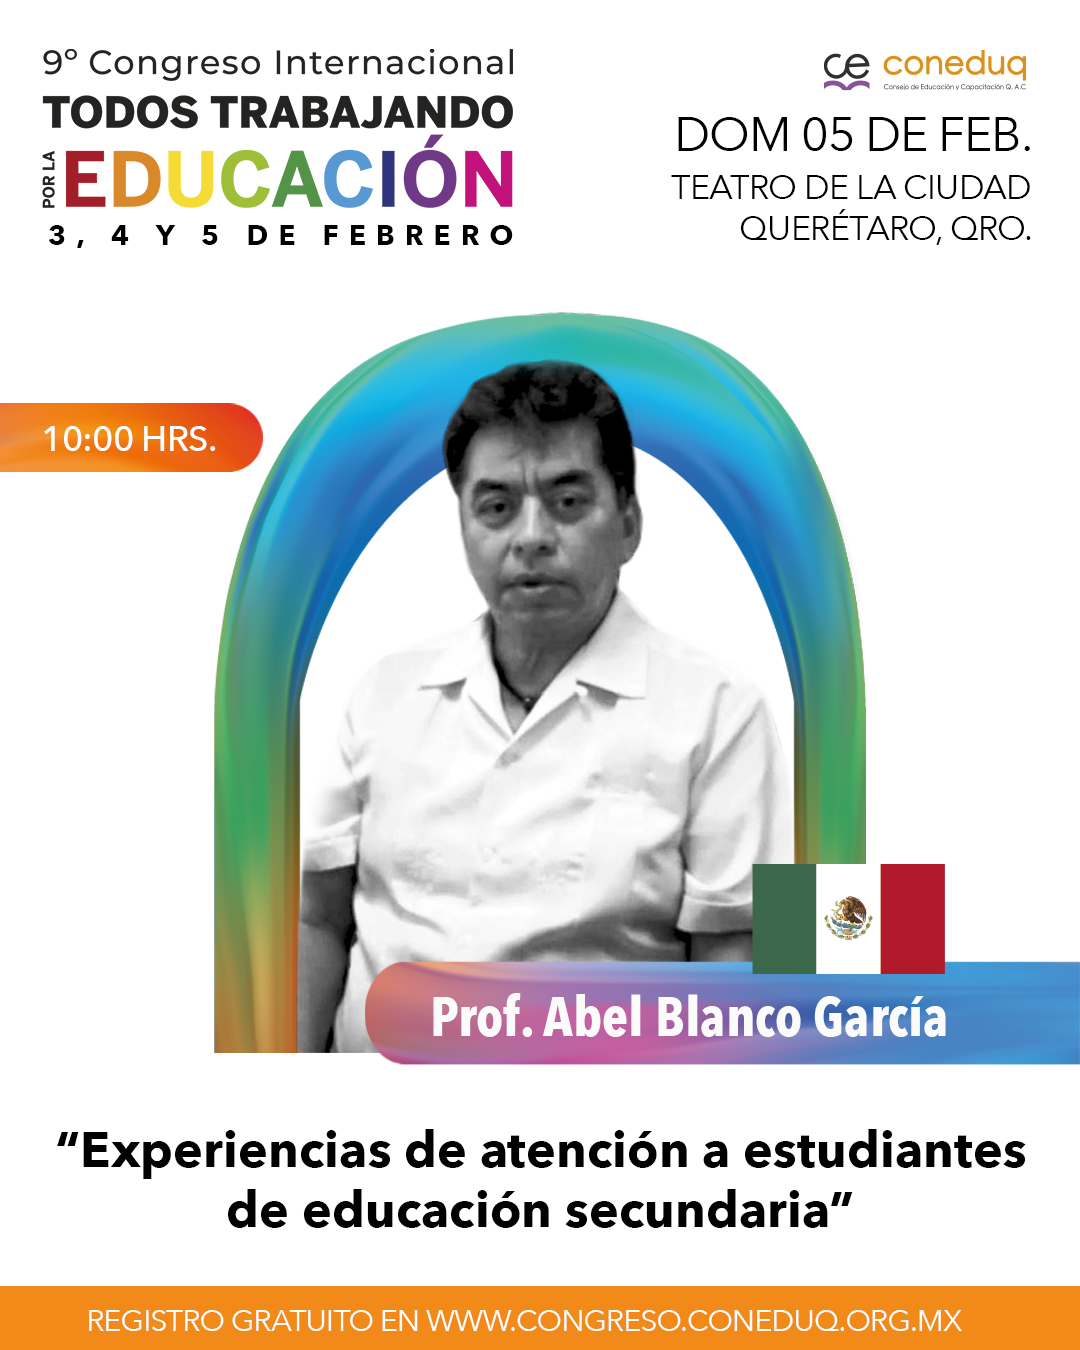 Profesor Abel Blanco García